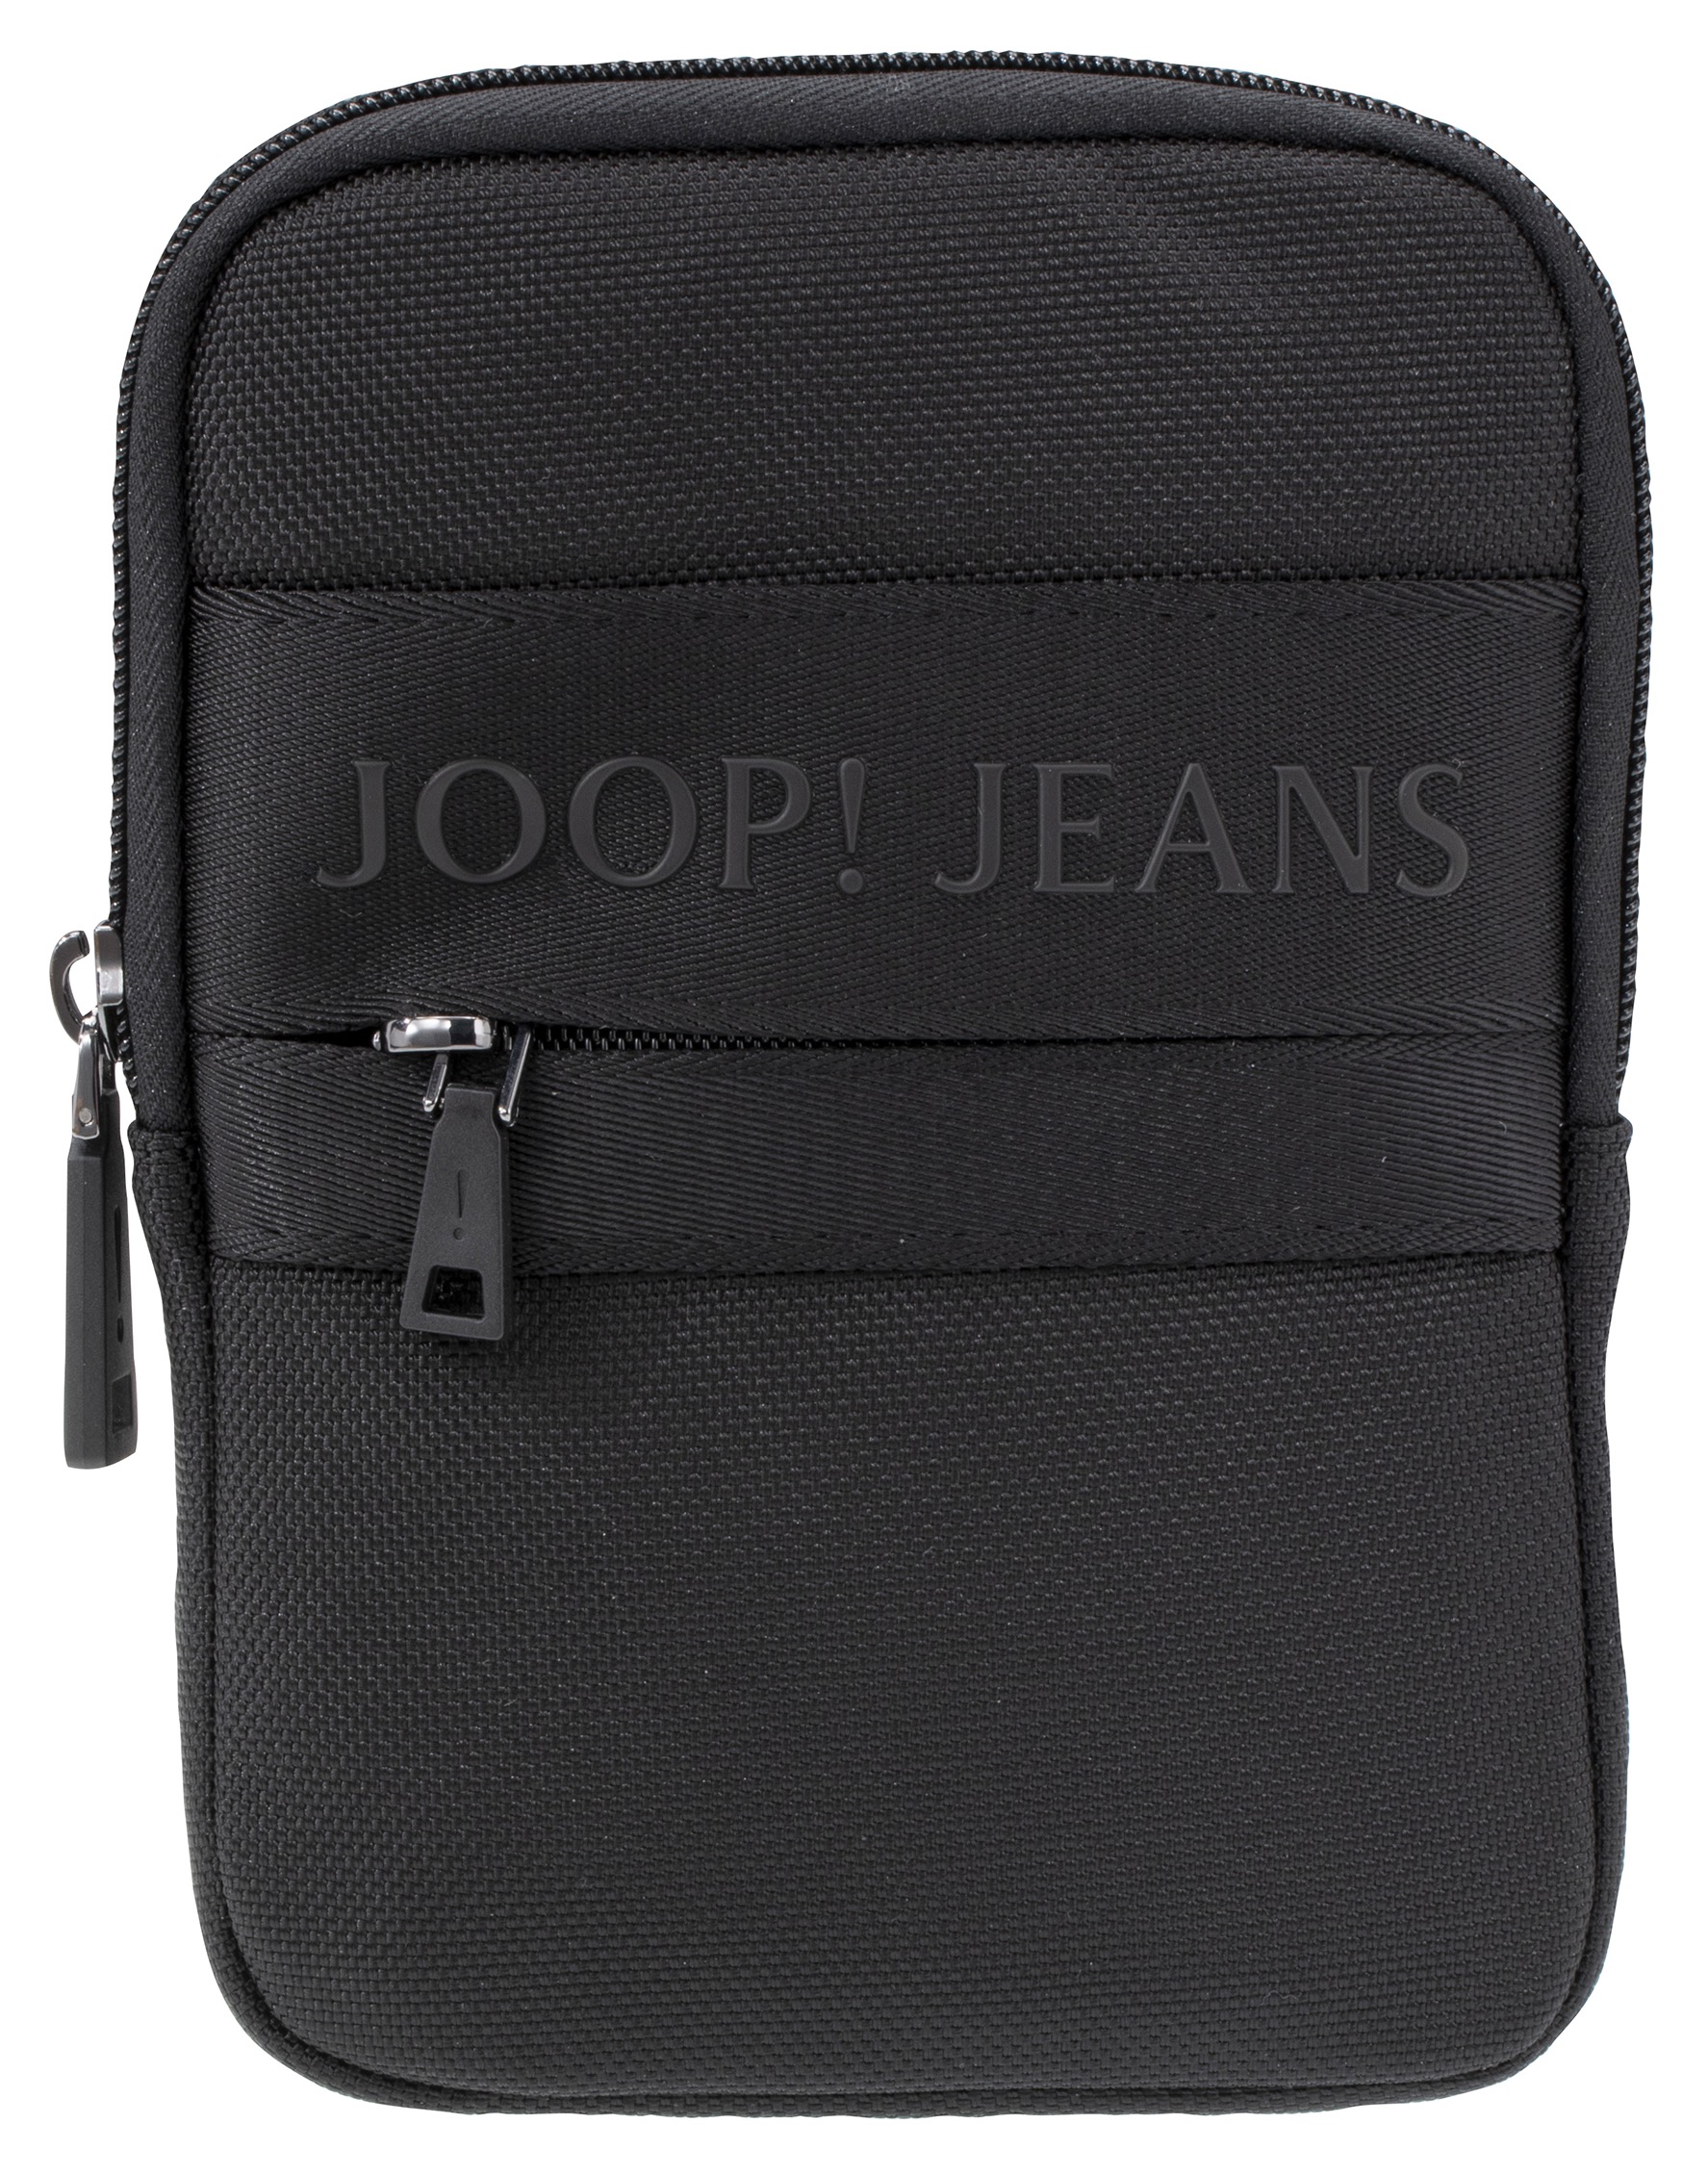 »modica shoulderbag Stickerei Joop Jeans ♕ Umhängetasche versandkostenfrei liam mit auf Logo xsvz«, schöner